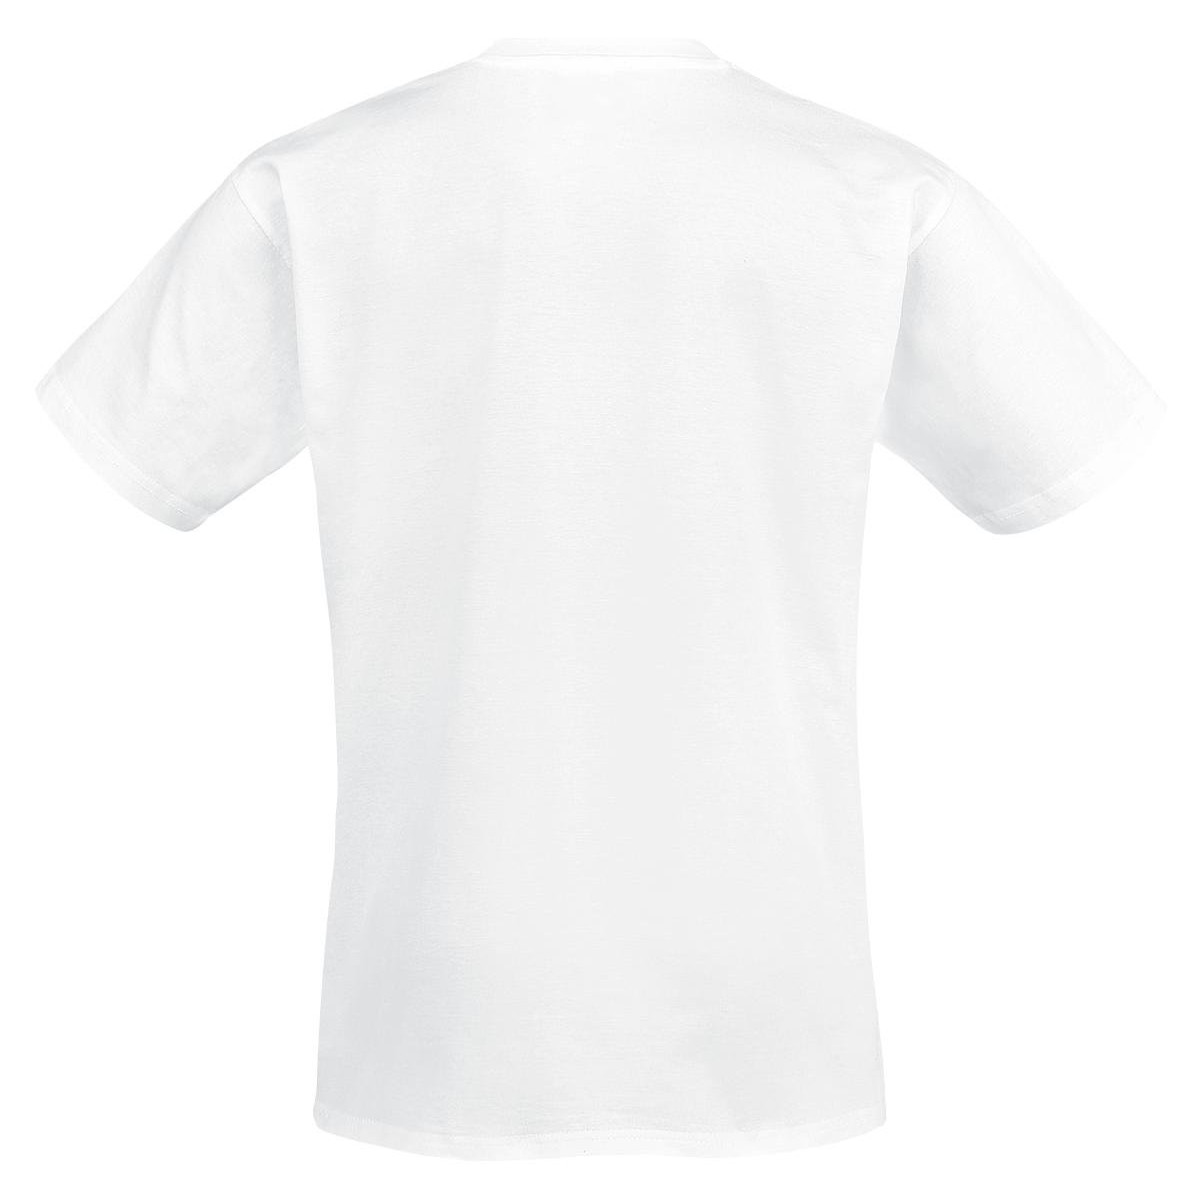 (ホワイル シー スリープス) While She Sleeps オフィシャル商品 ユニセックス Silence Speaks Tシャツ コットン 半袖 トップス 【海外通販】